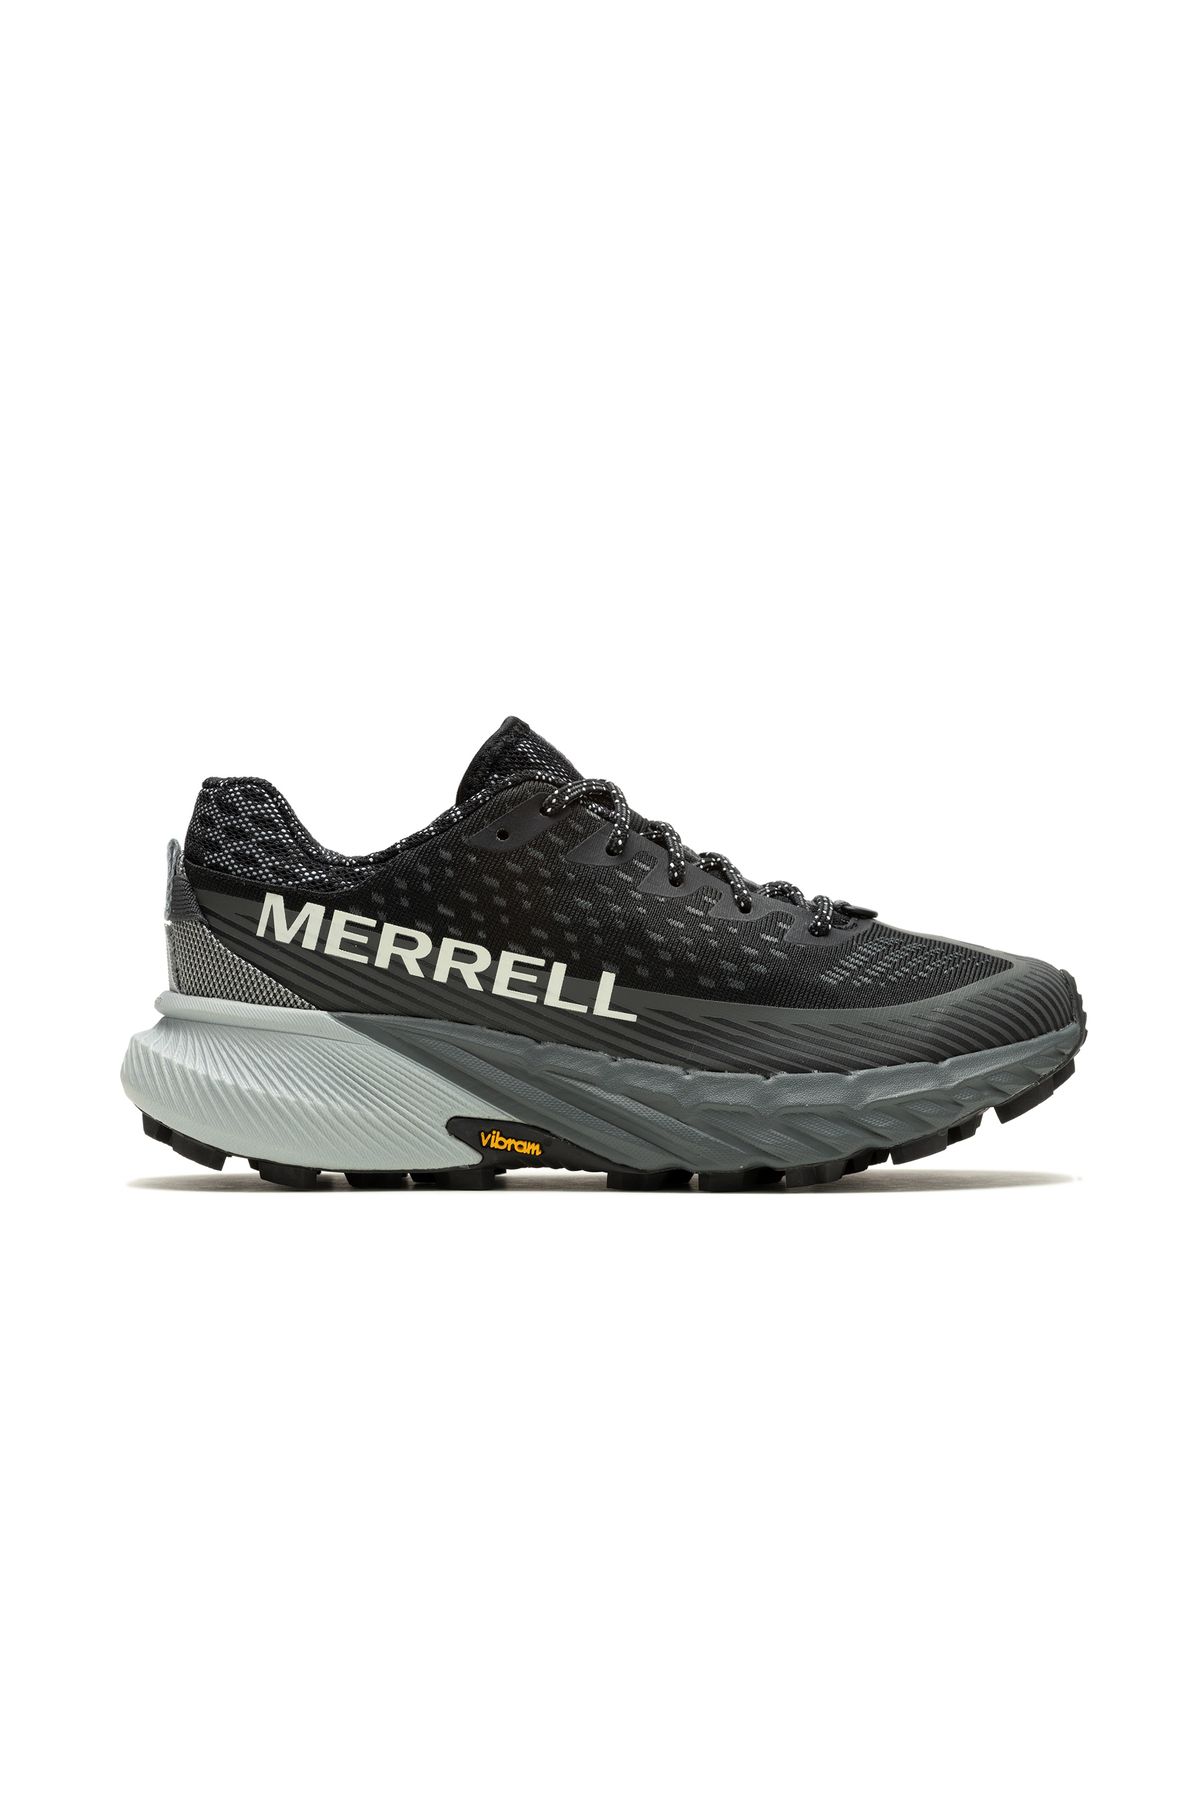 Merrell Agility Peak 5 Patika Koşu Ayakkabısı Siyah